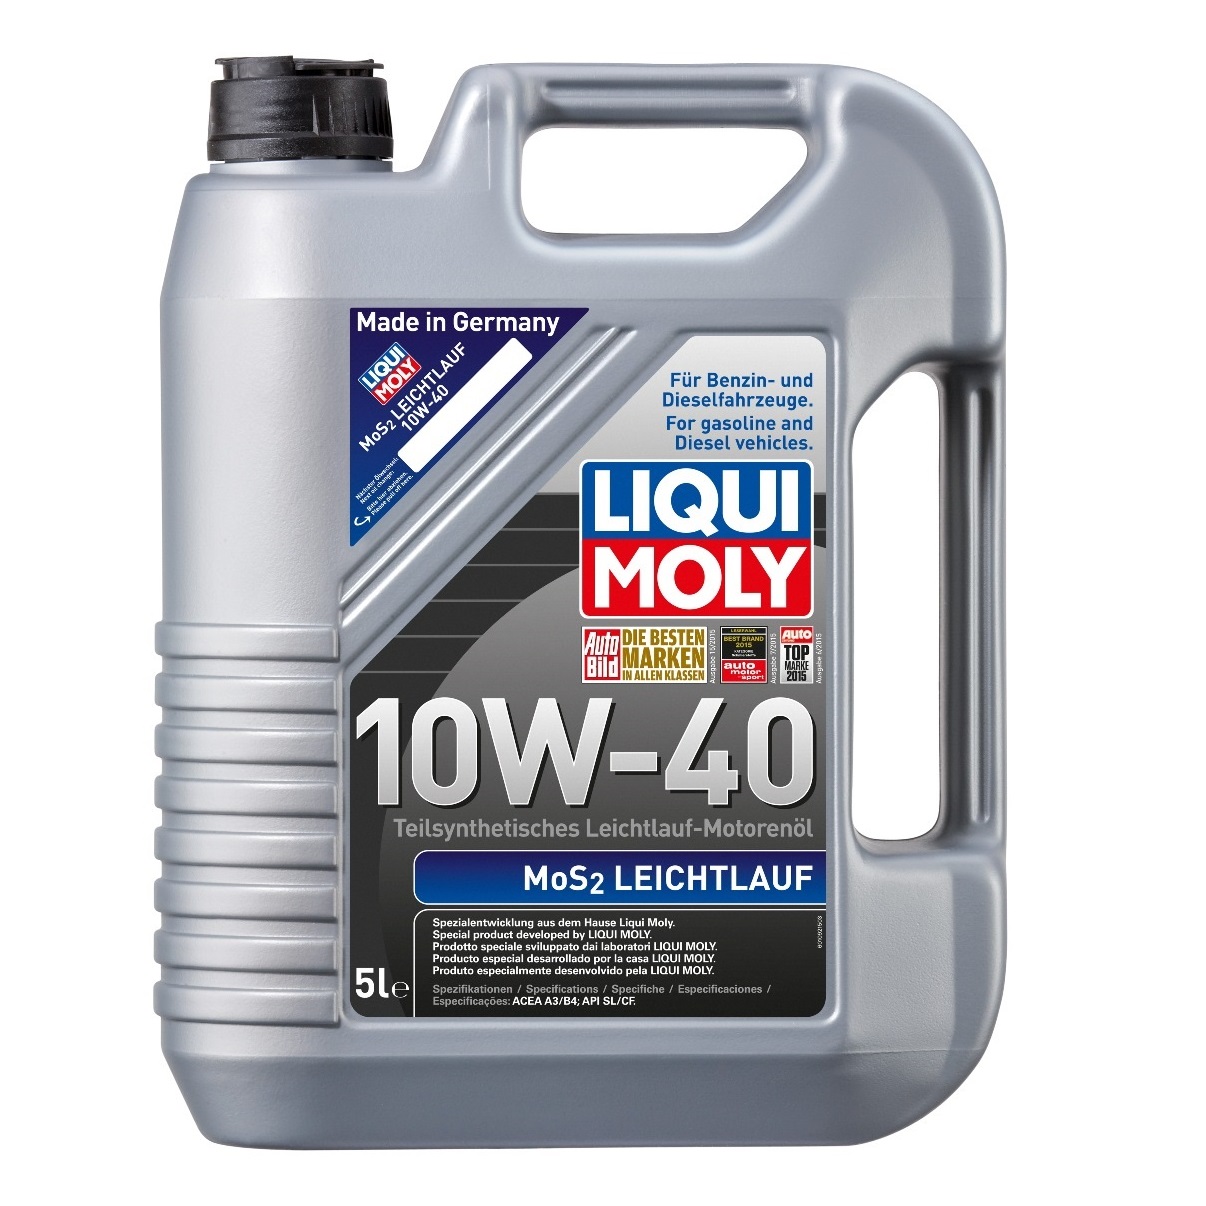 Liqui Moly Leichtlauf cu MOS2 10W-40 (2184) / 5L